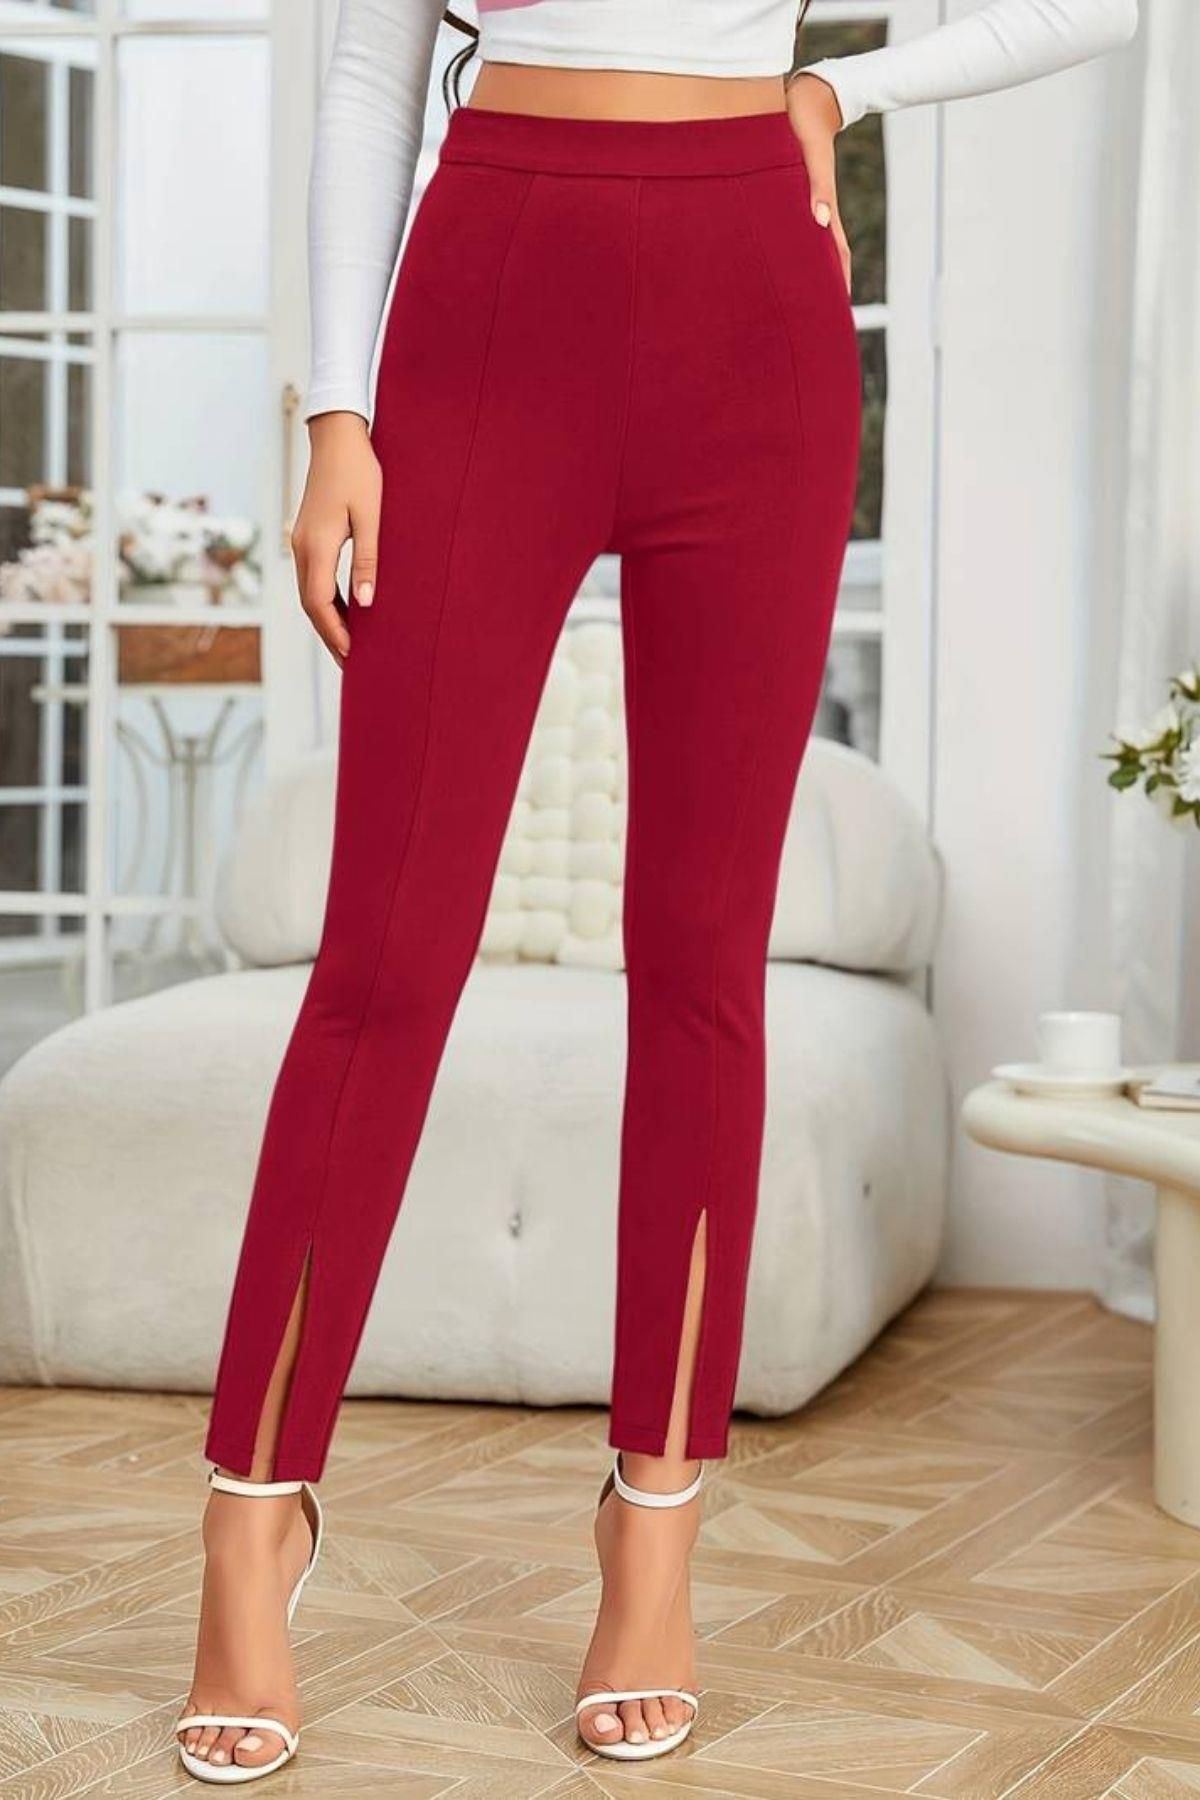 Mossta Kadın Önden Yırtmaçlı Yüksek Bel İthal Krep Pantolon Kırmızı